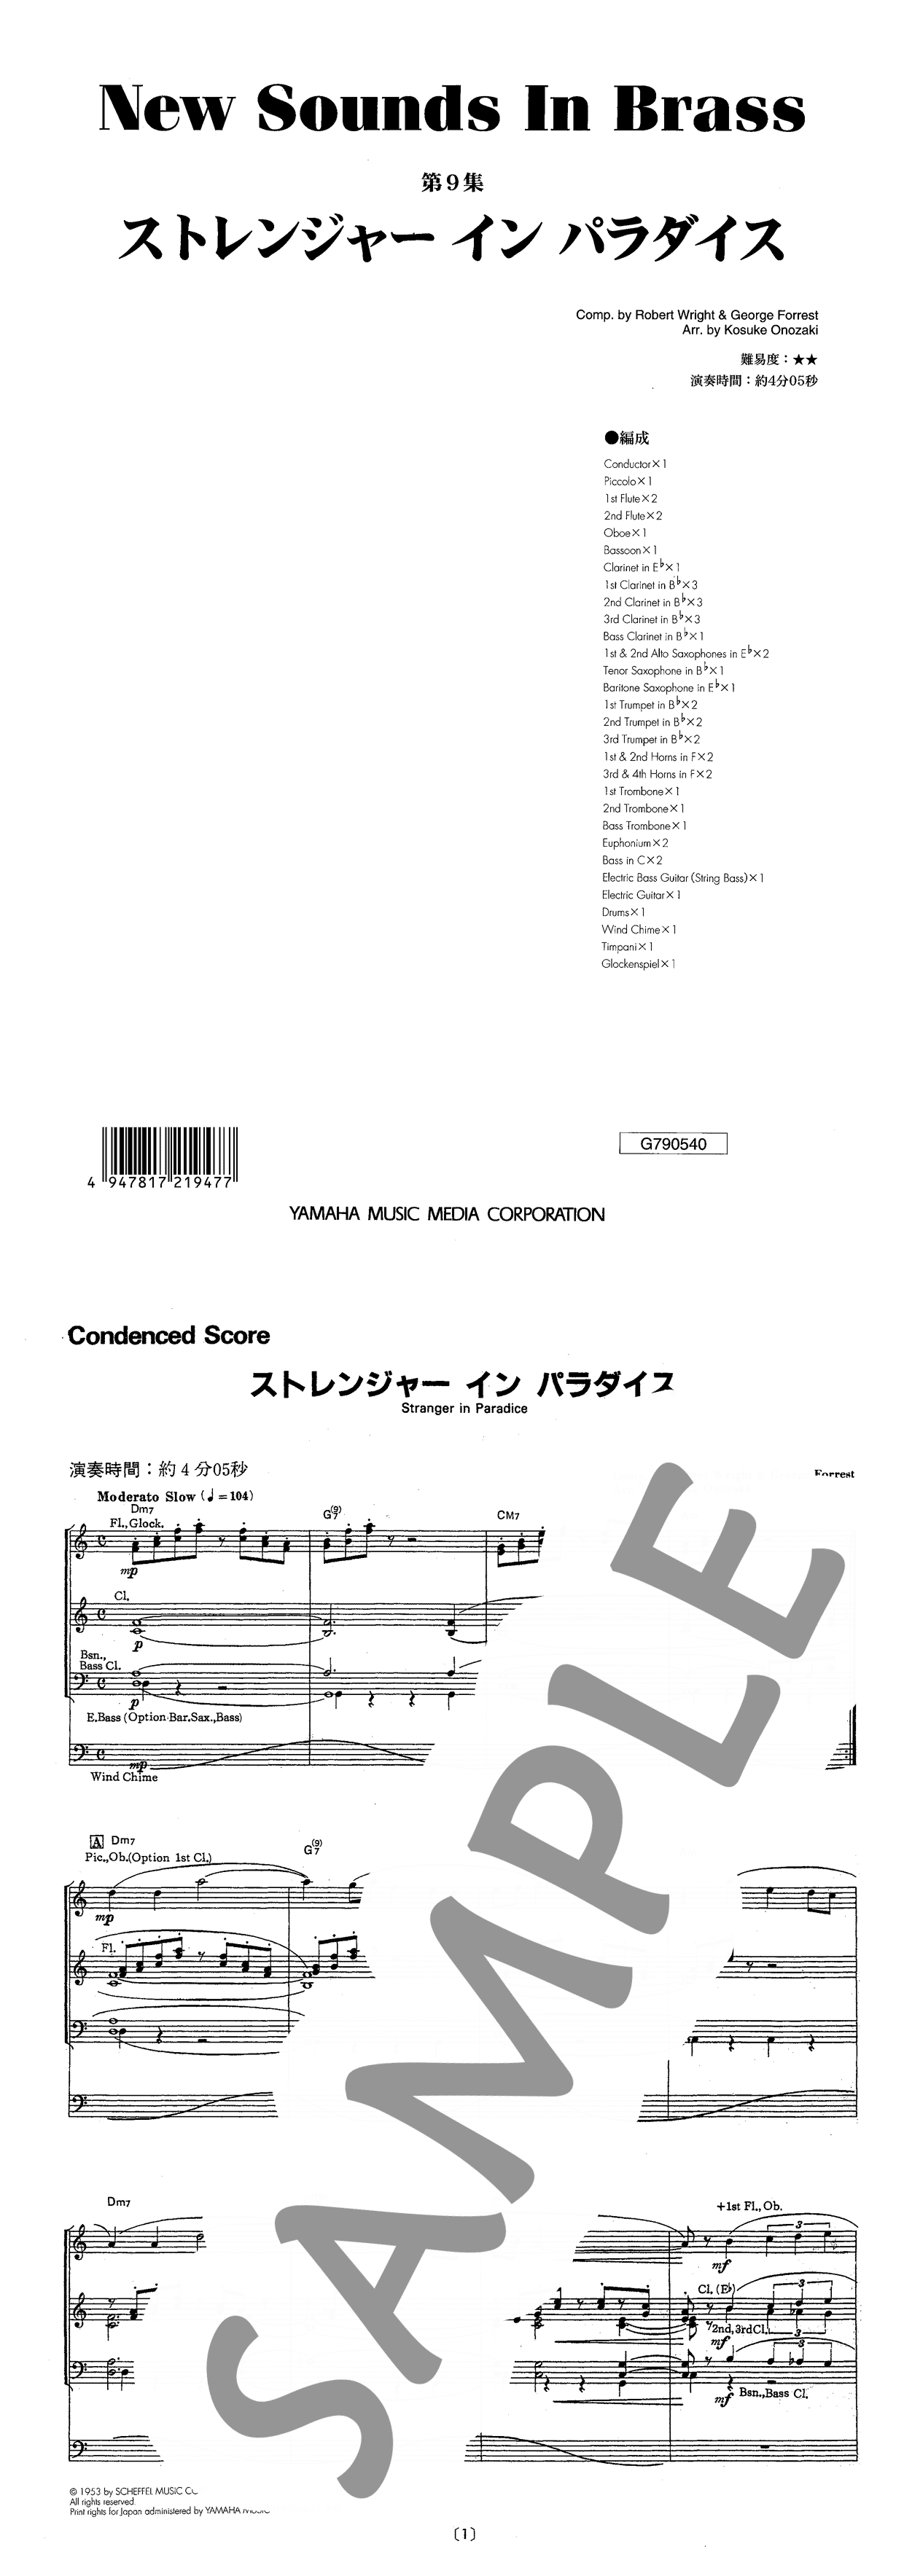 ヤマハ】New Sounds in Brass ストレンジャー・イン・パラダイス 